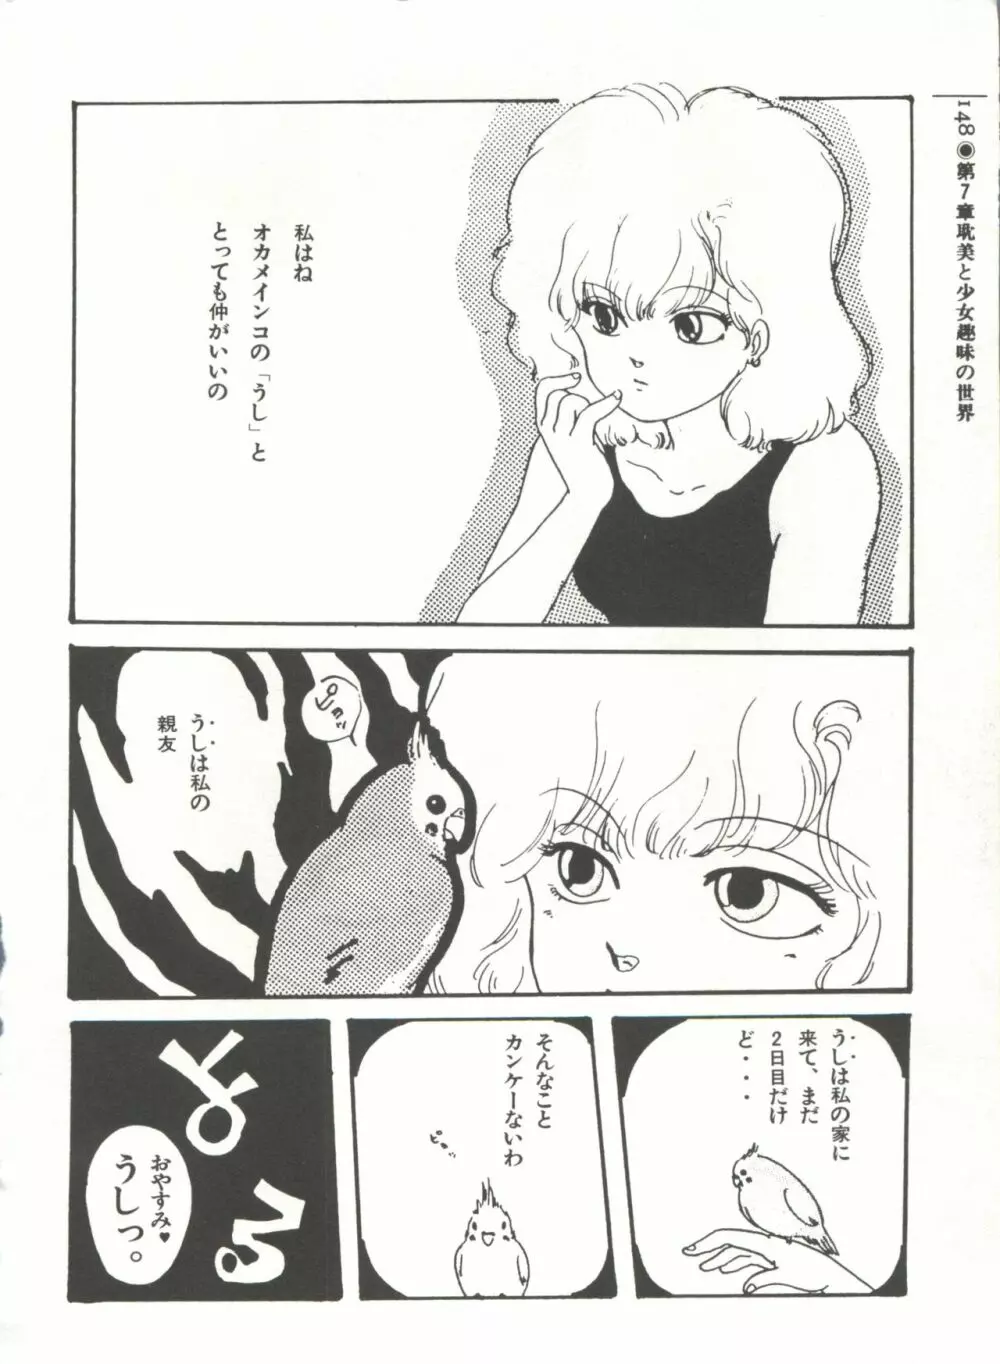 [Anthology] 美少女症候群(2) Lolita syndrome (よろず) 151ページ